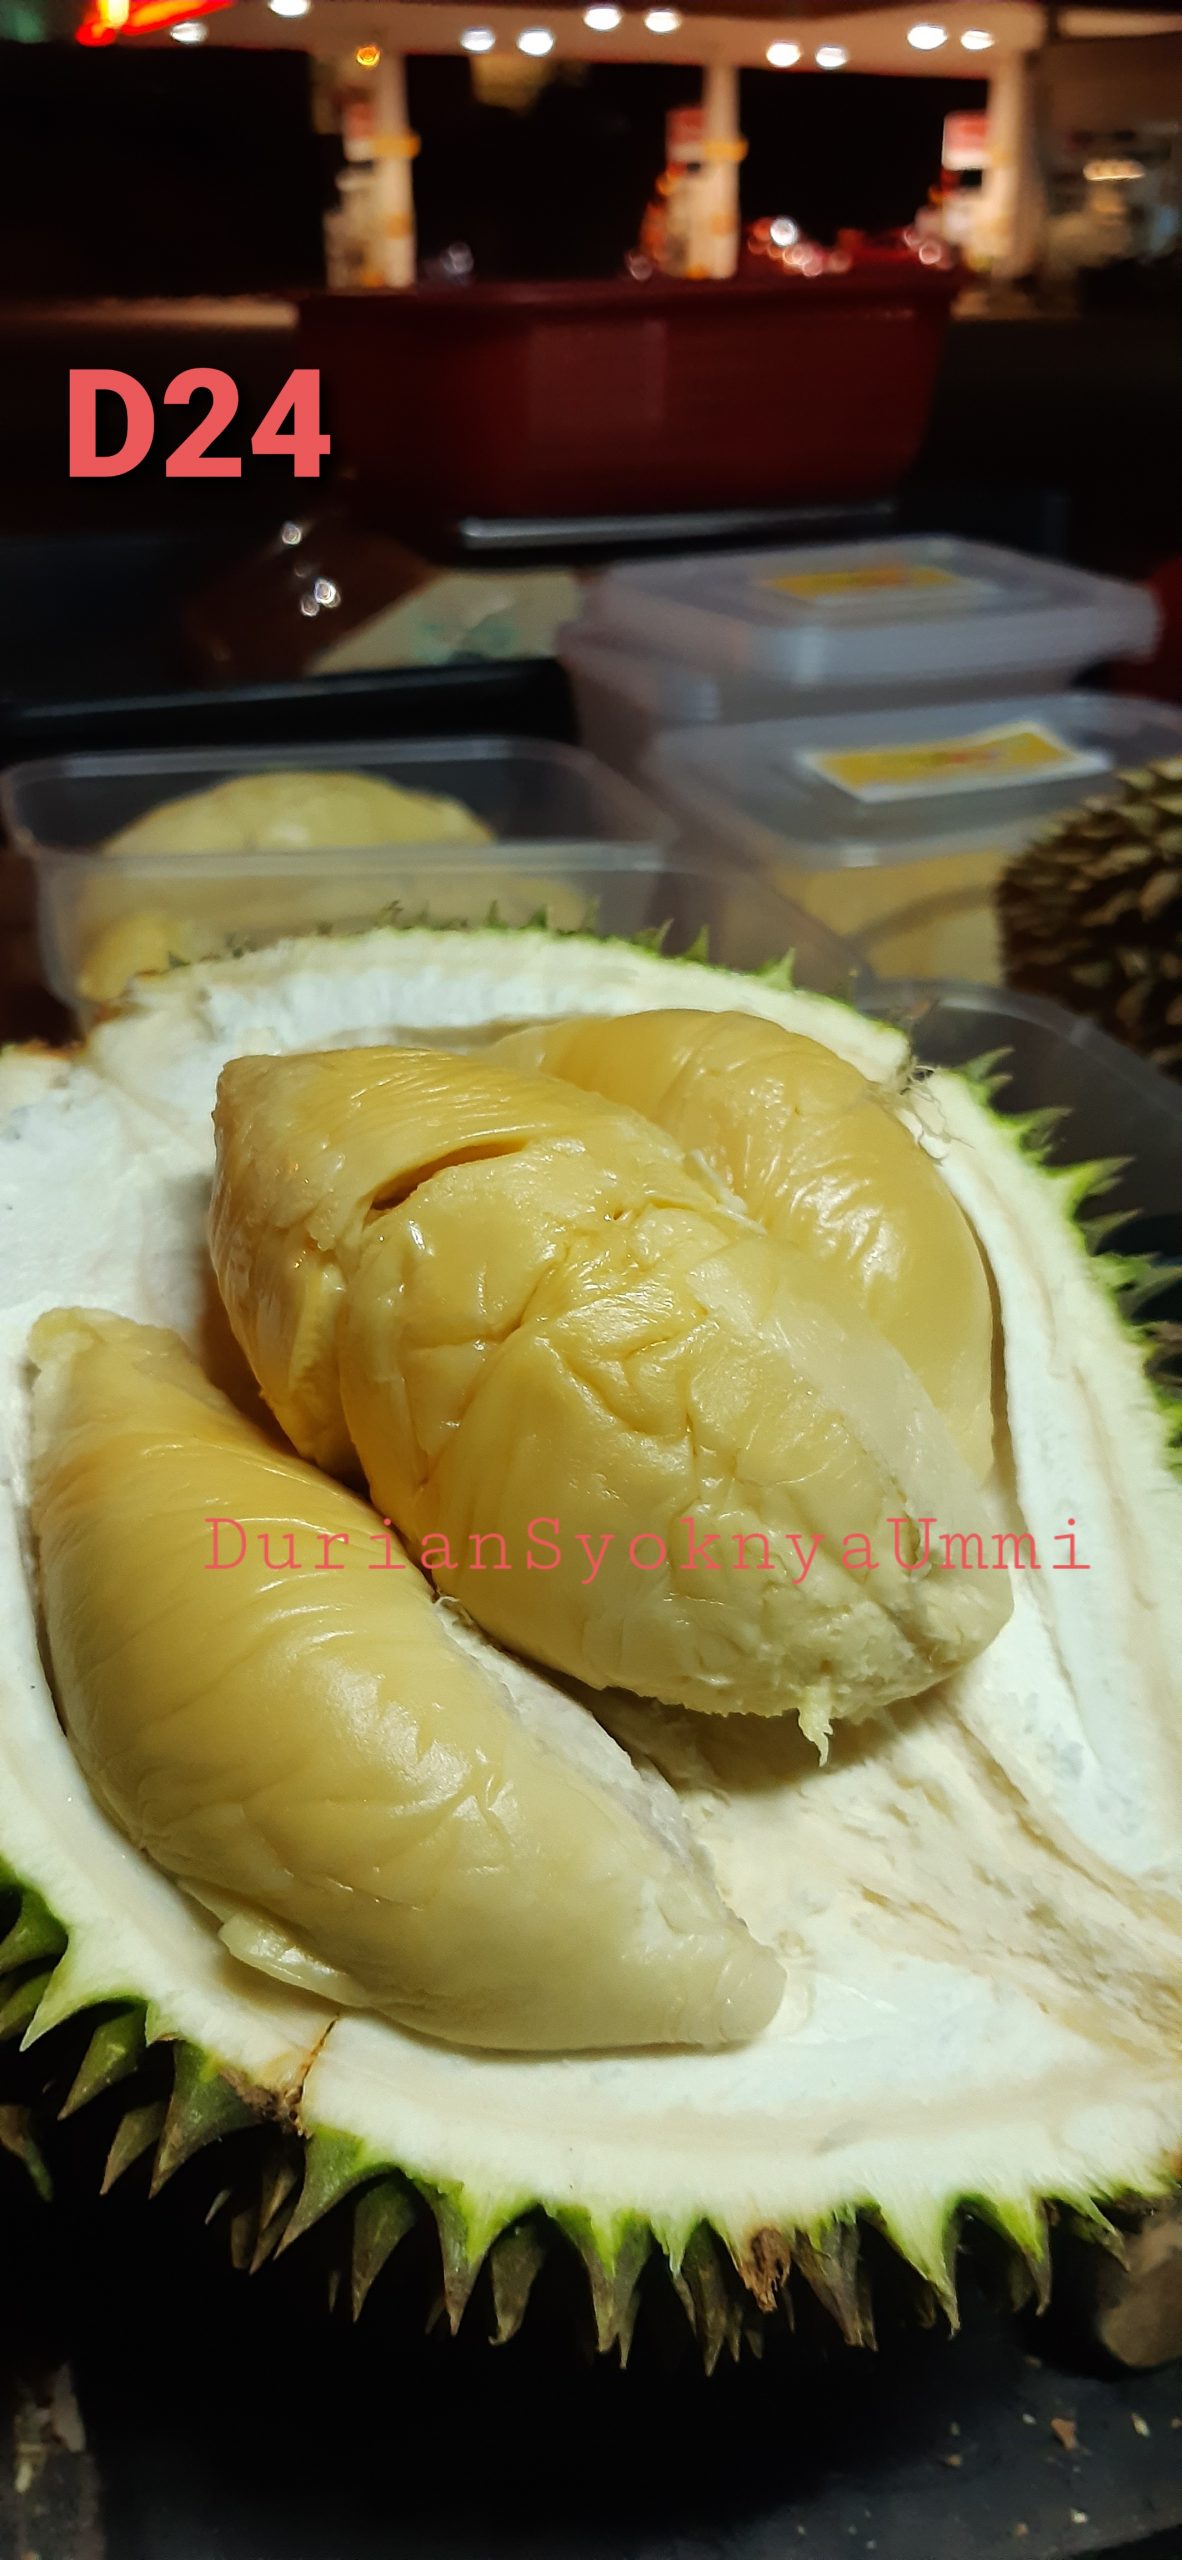 Durian udang merah johor